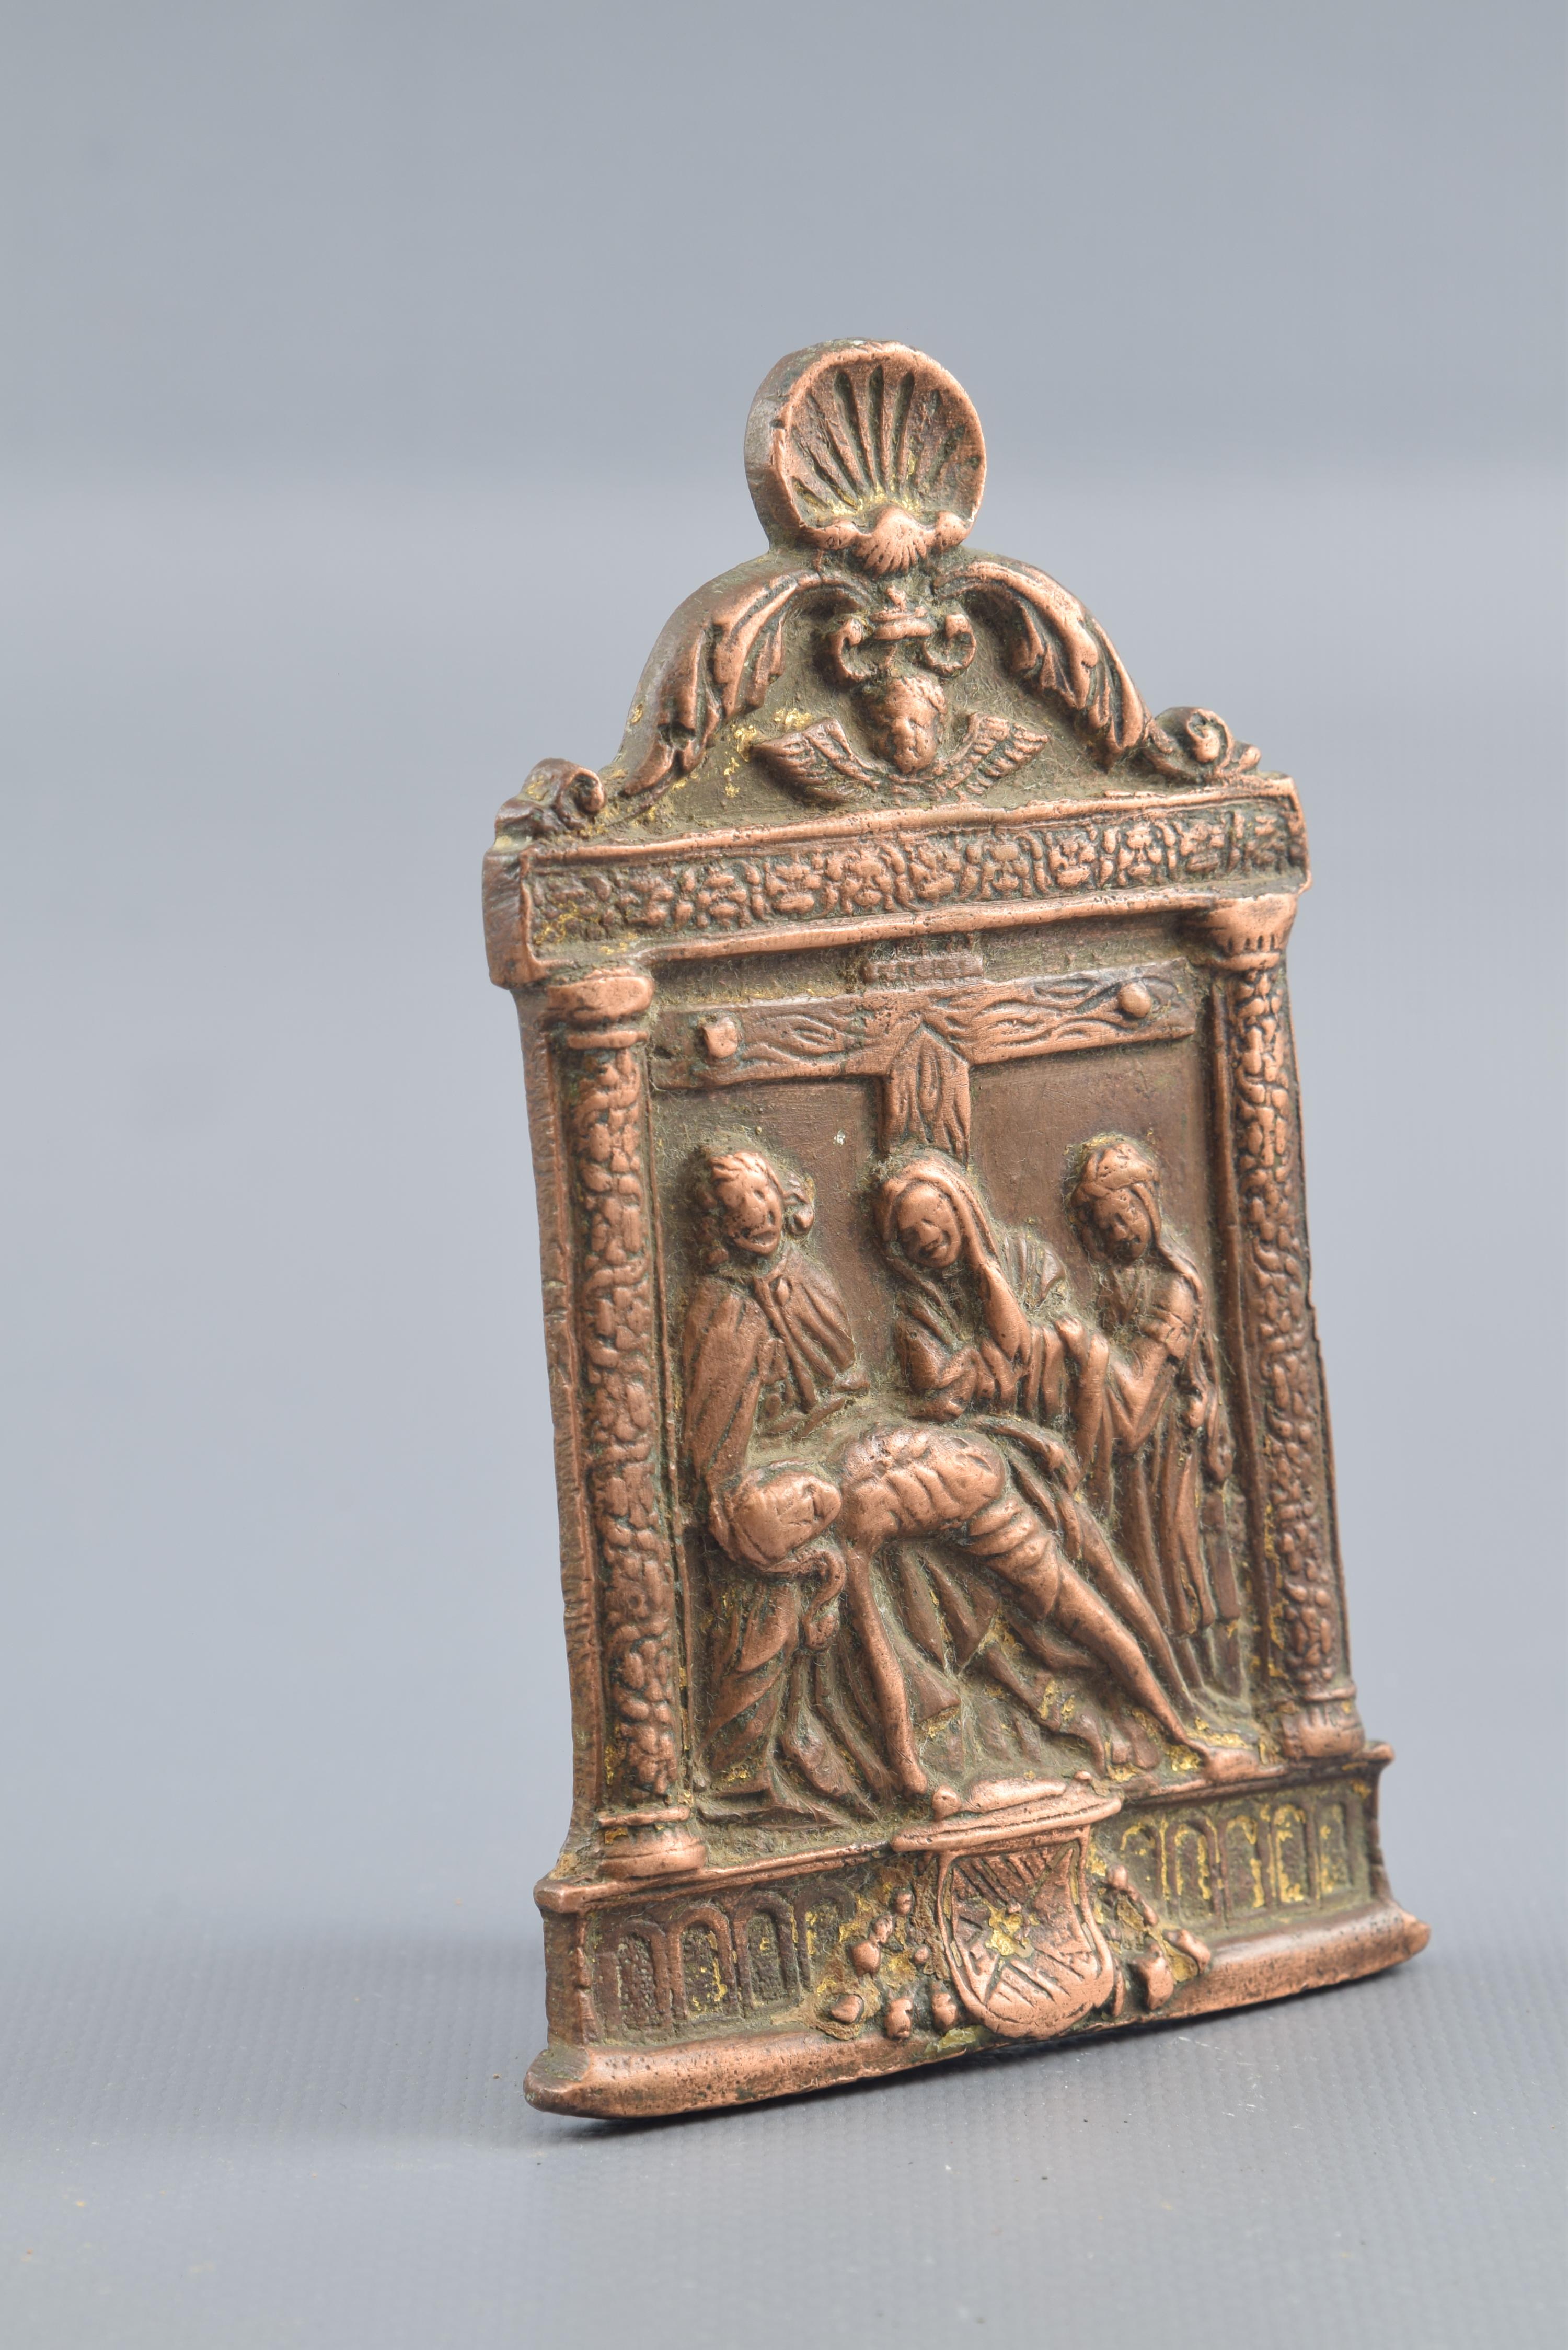 Porte-papier en bronze, XVIe siècle.
Portapaz en bronze avec une poignée 